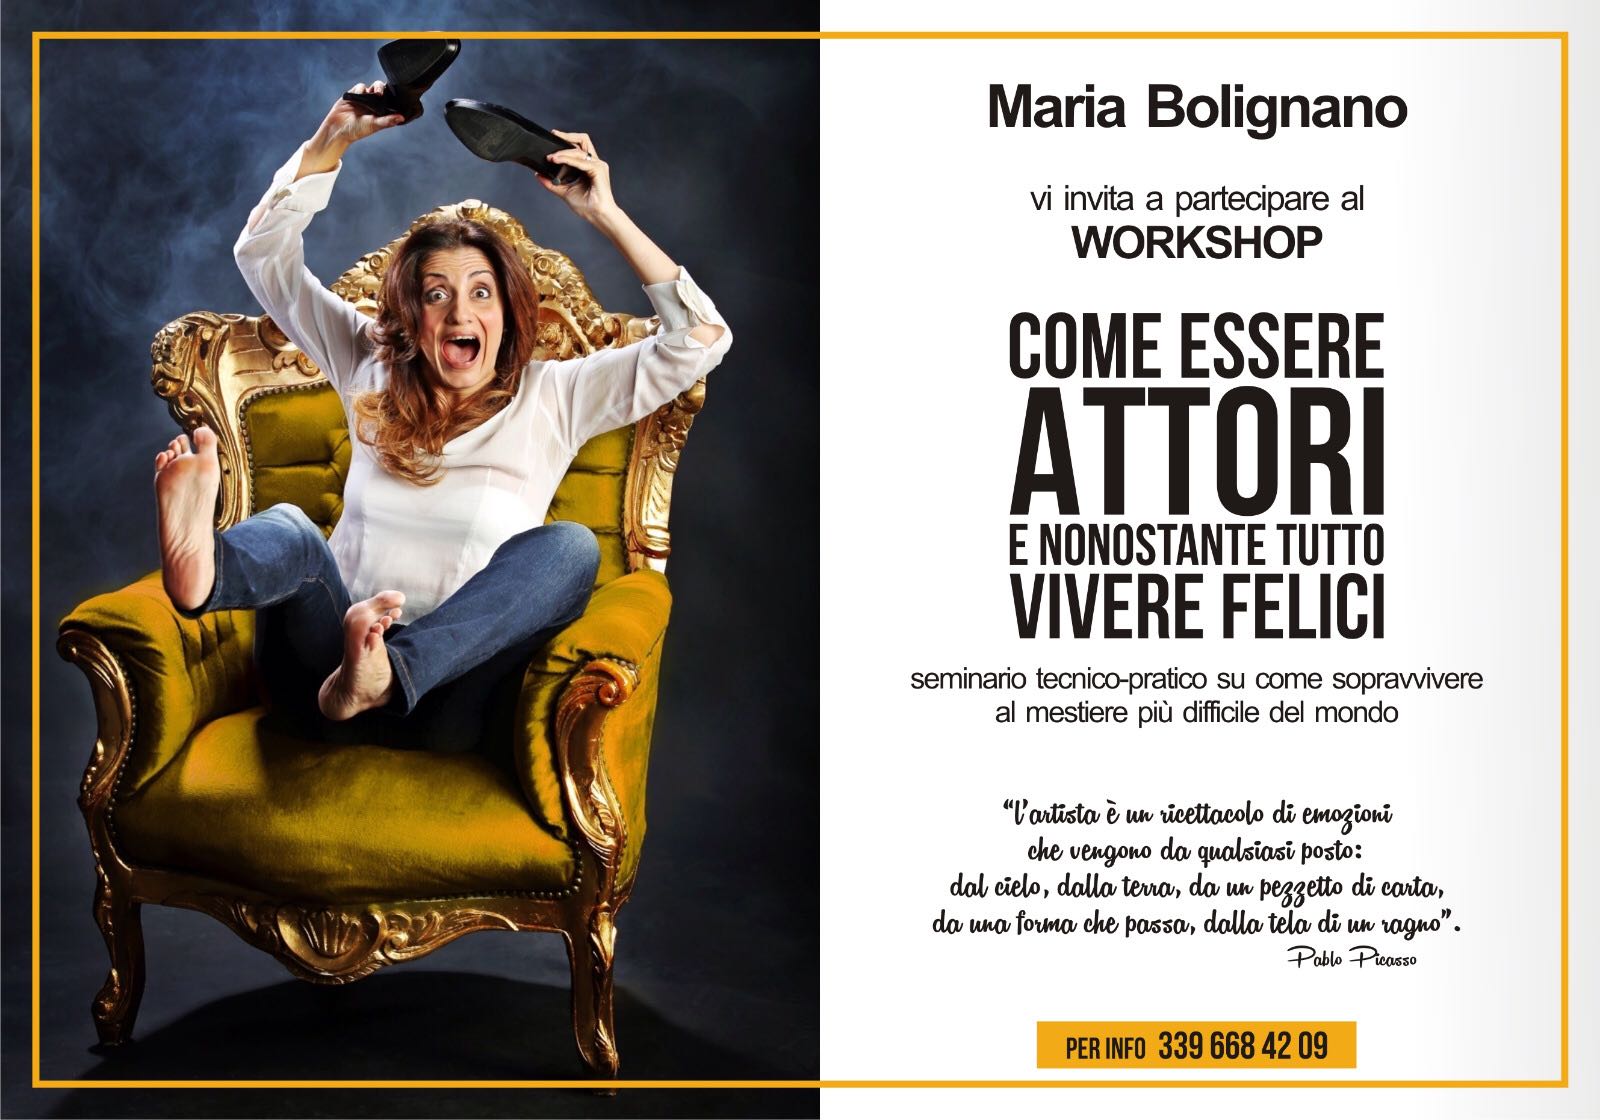 Come essere attori e nonostante tutto vivere felici: il workshop di Maria Bolignano